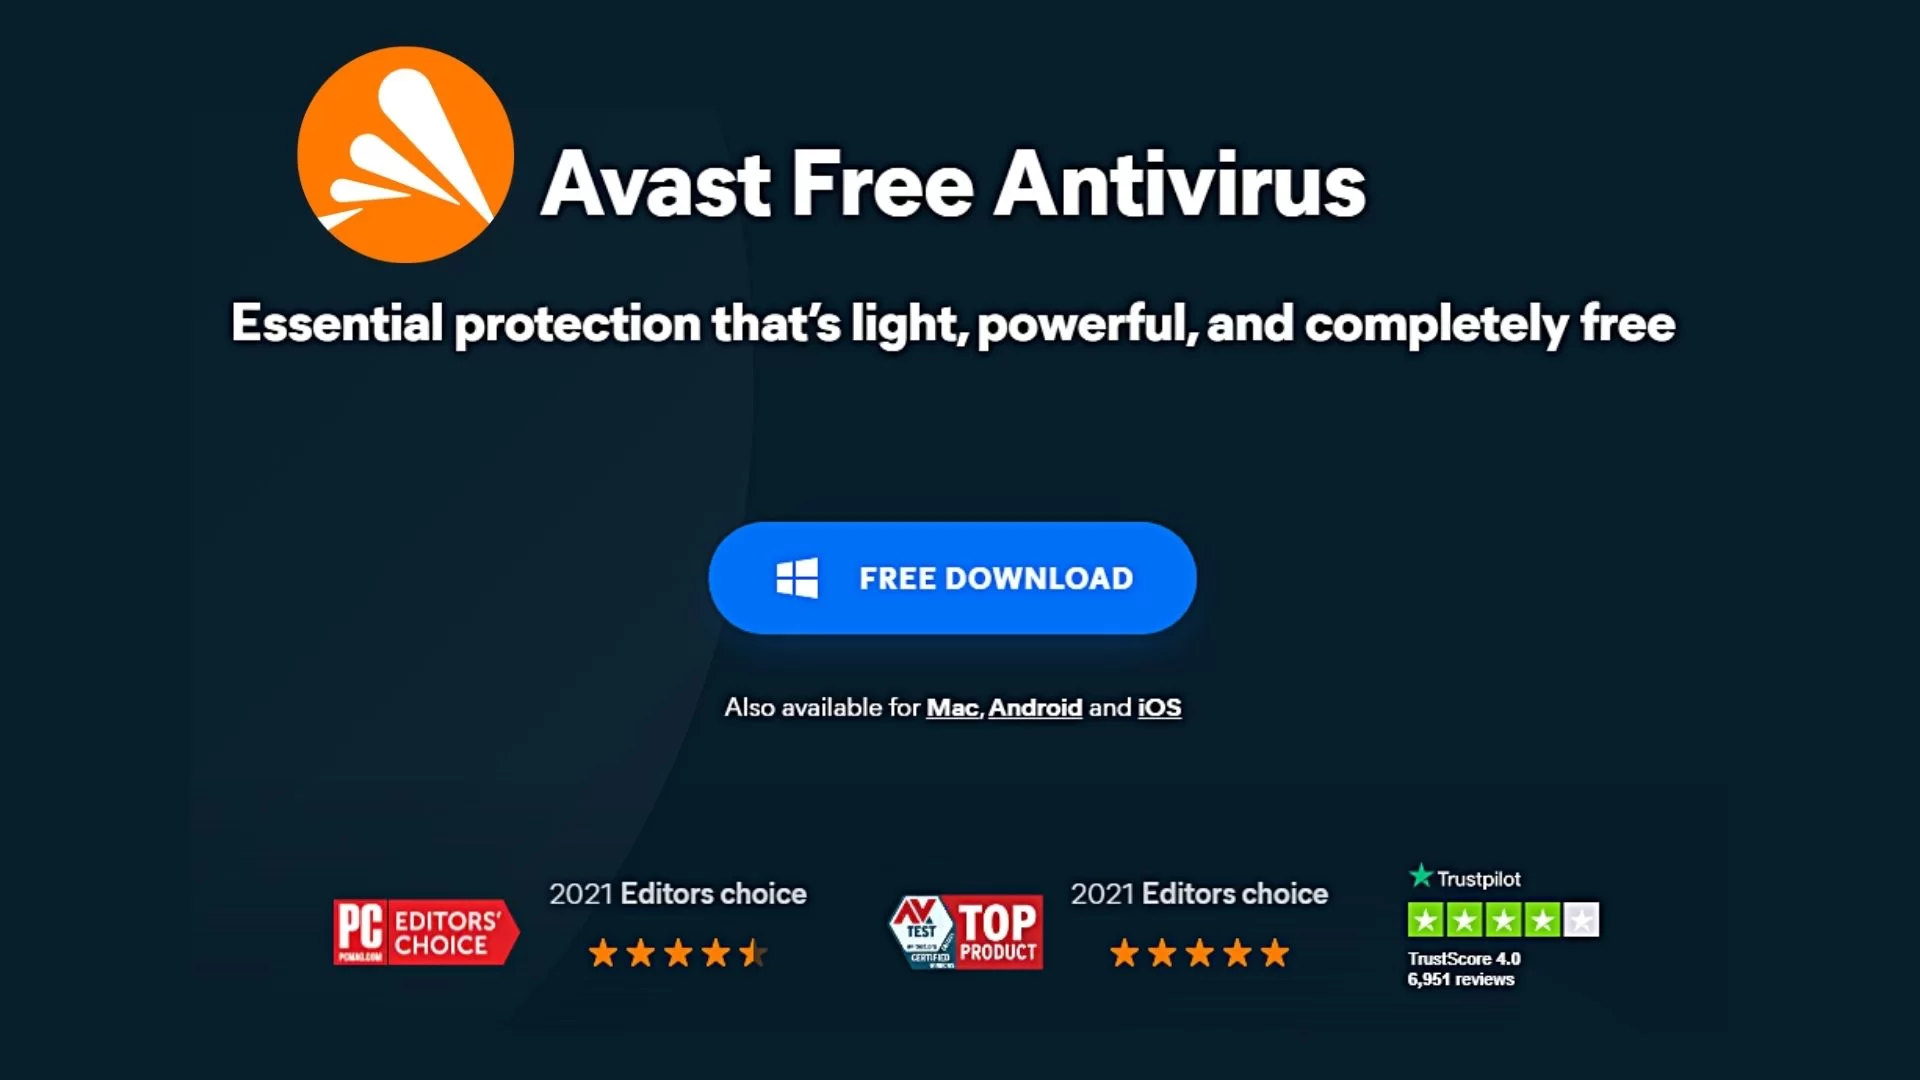 What Is Avast Free Antivirus?